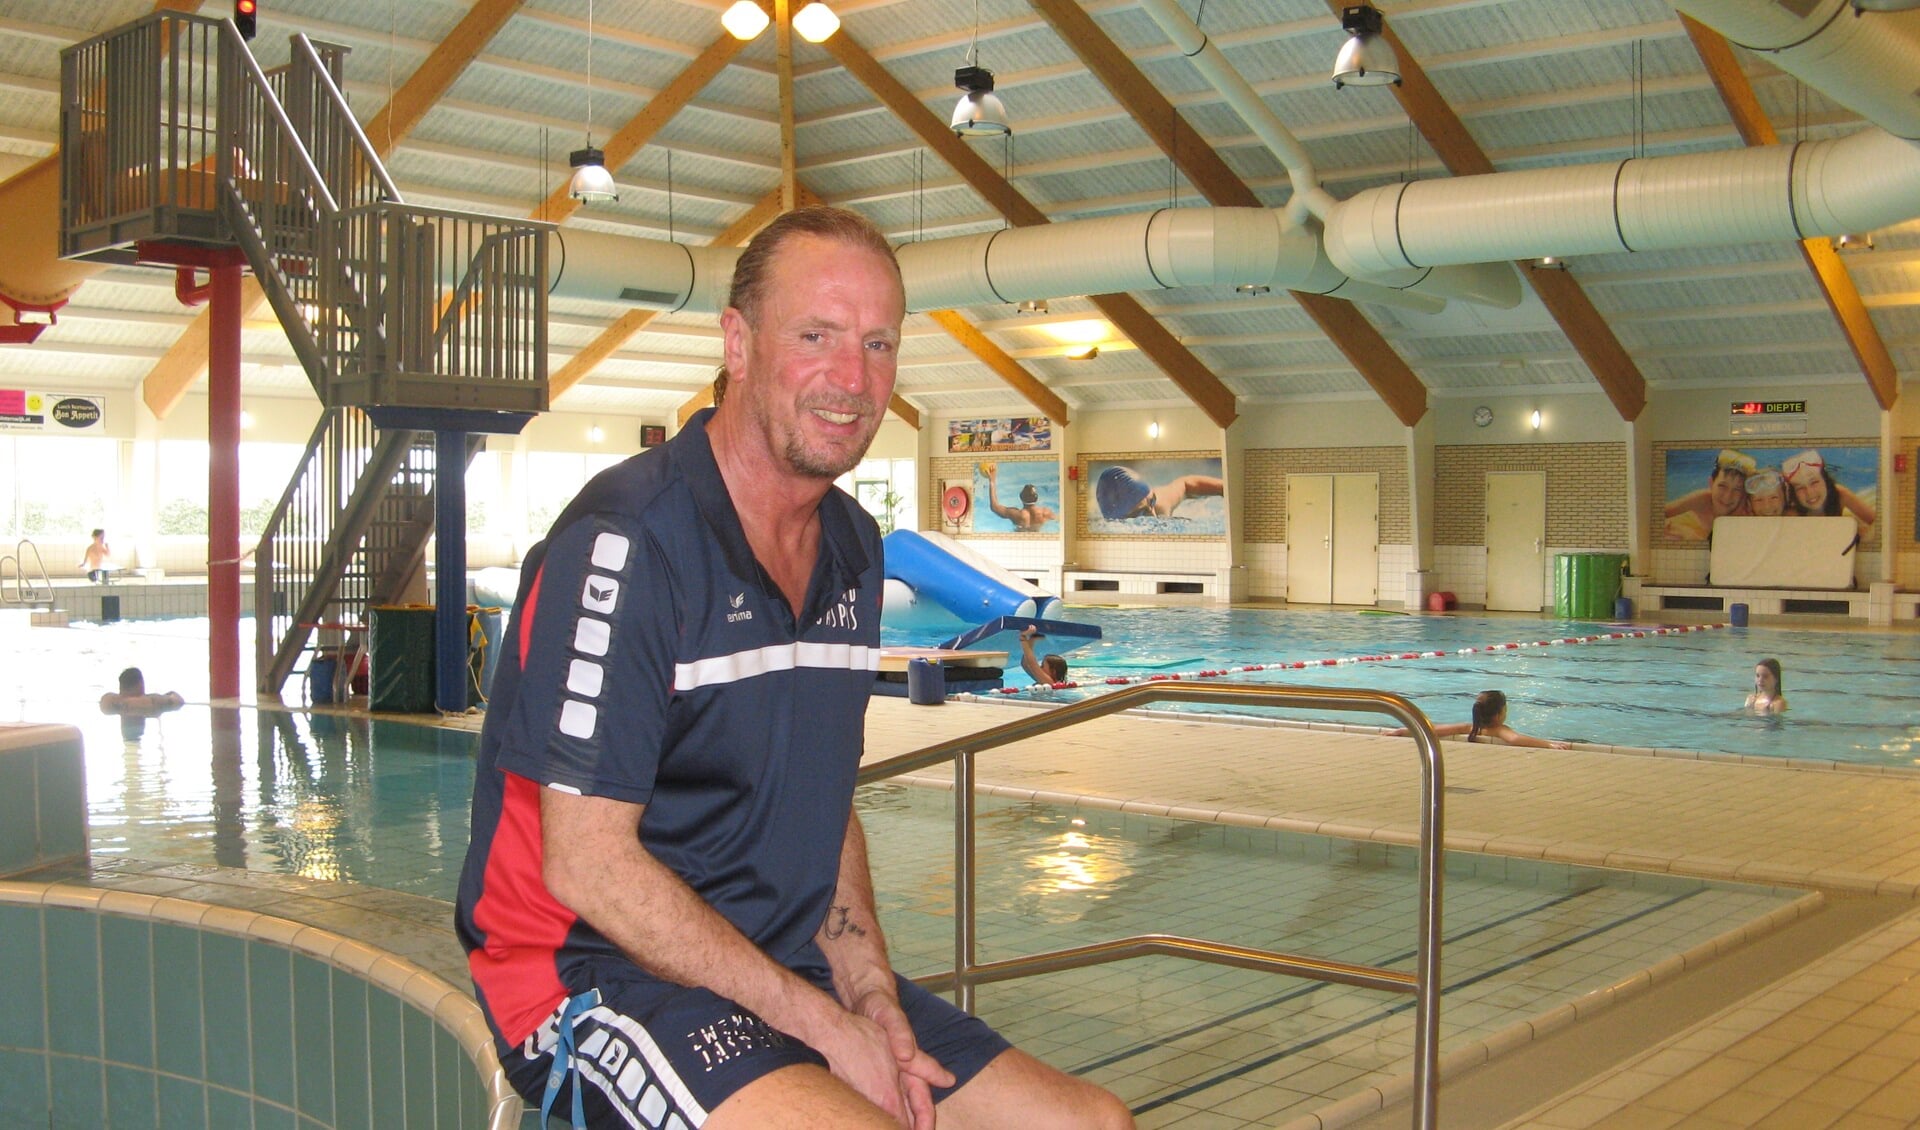  Zweminstructeur Rudy te Molder in zwembad Jaspers. Foto: Bart Kraan